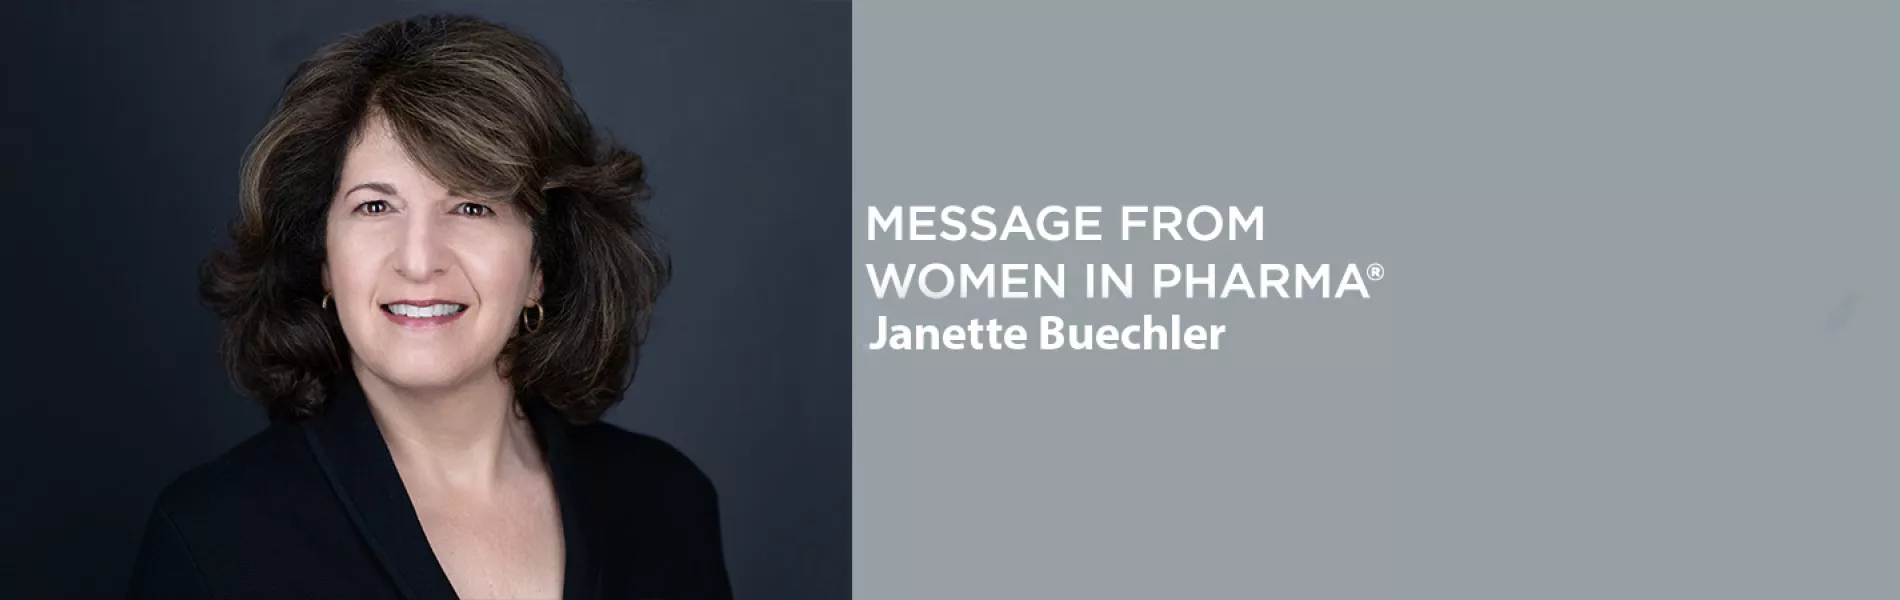 Women in Pharma® Editorial: Janette Buechler